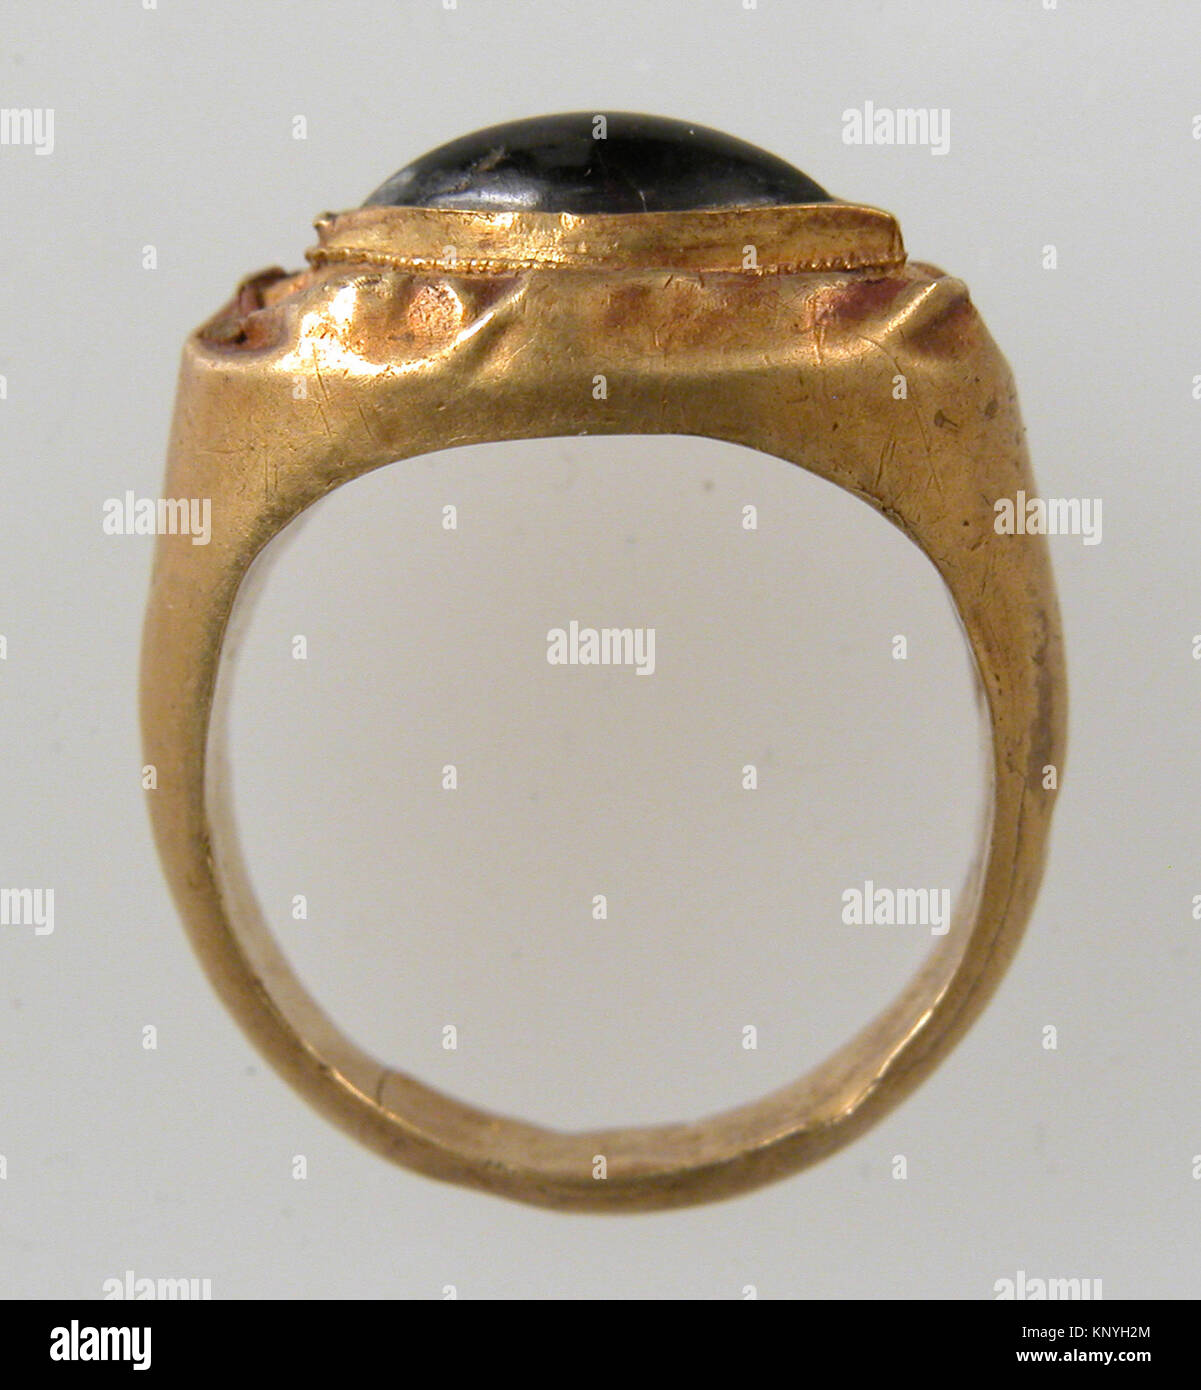 Finger Ring mit ovaler Blende MET sf 17-192-195 s2 465258 Fränkischen, Finger Ring mit ovaler Einfassung, 7. Jahrhundert, Gold, Granat Cabochon, Insgesamt: 13/16 x 11/16 x 3/8 in. (2,1 x 1,7 x 1 cm) Lünette: 5/16 x 3/16 in. (0,8 x 0,4 cm). Das Metropolitan Museum of Art, New York. Geschenk der J. Pierpont Morgan, 1917 (17.192.195) Stockfoto